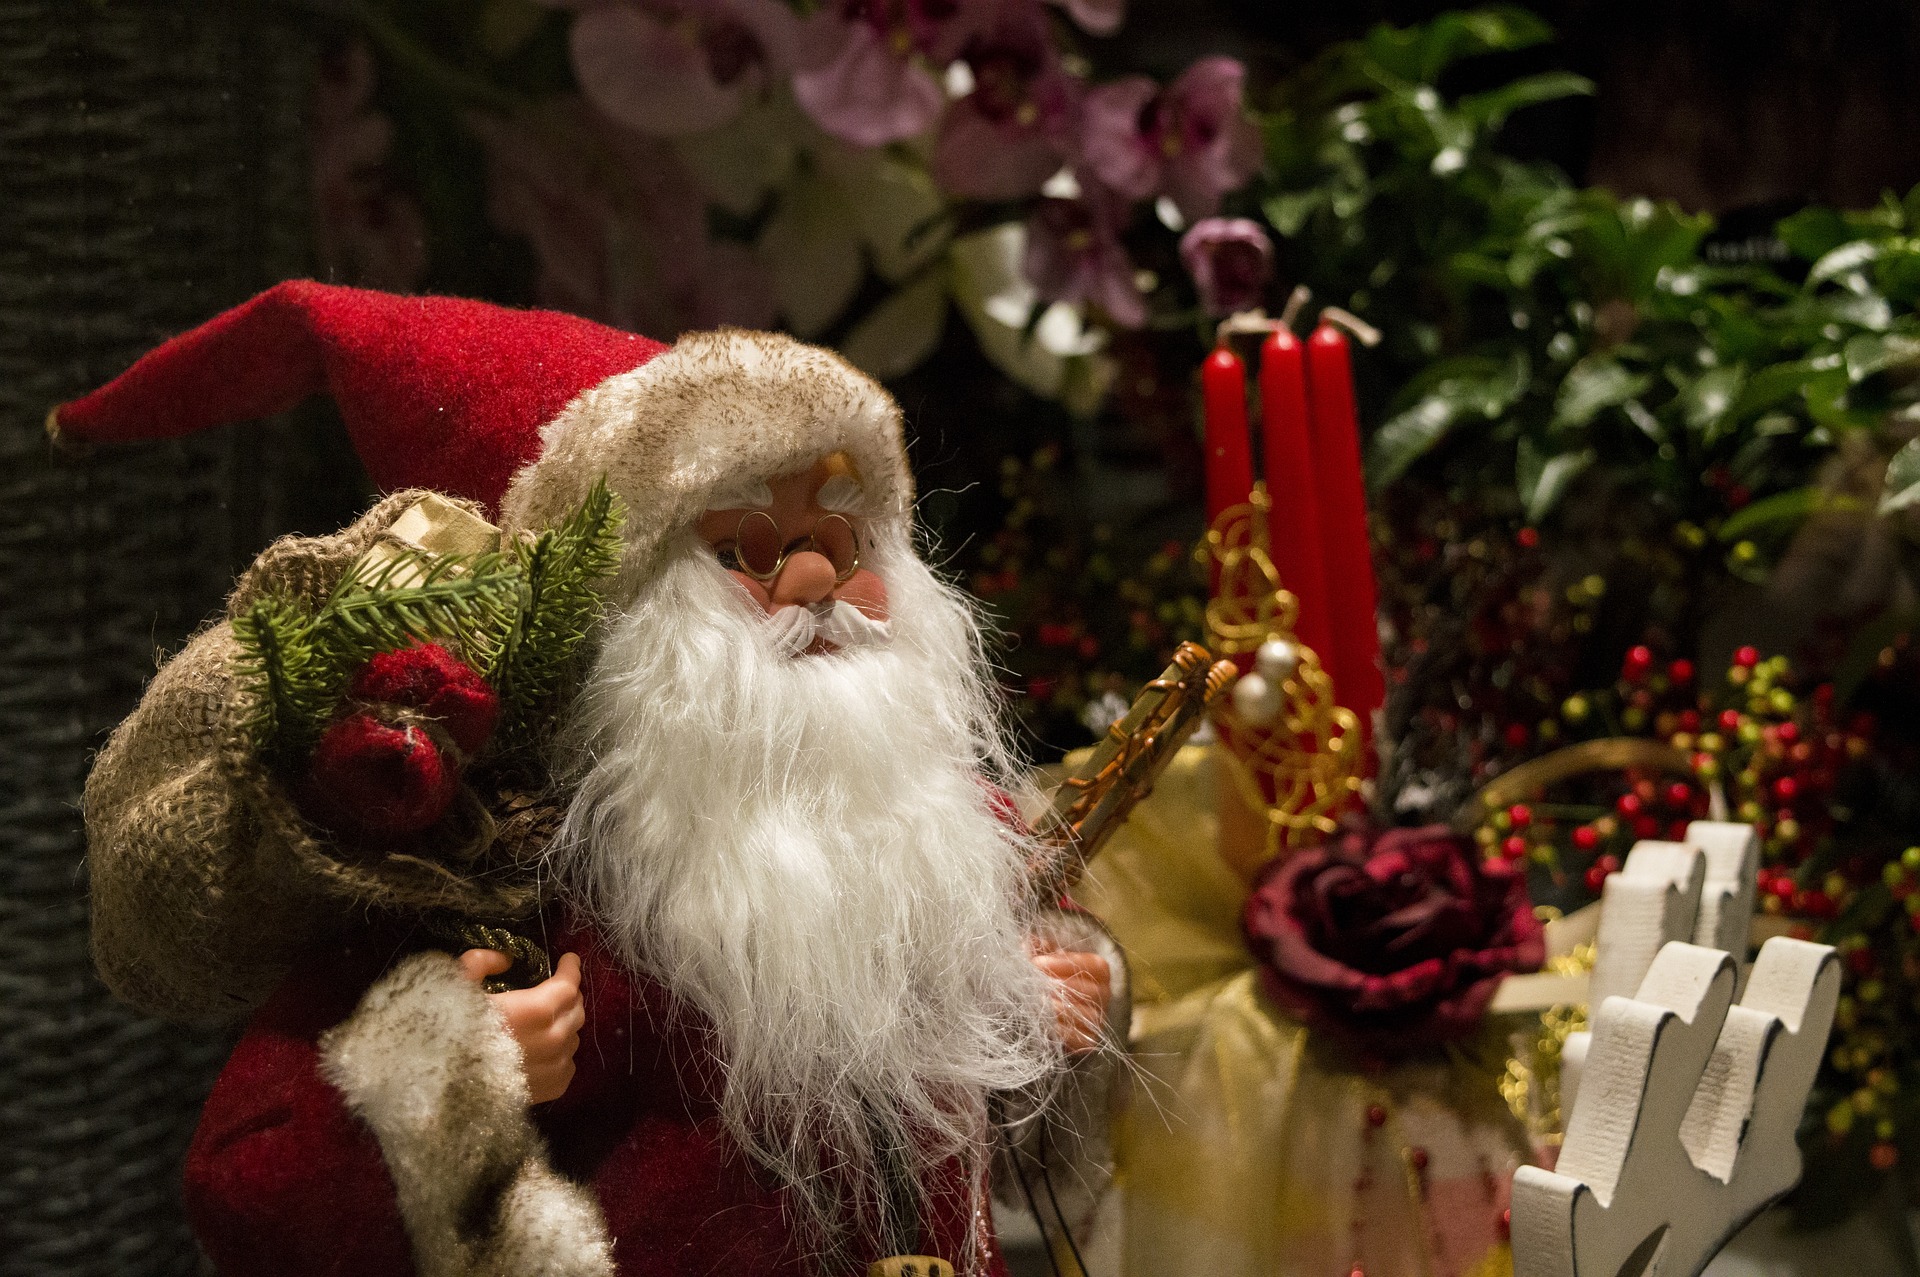 Правильно просите подарок у Деда Мороза: презент не должен быть масштабным, чем-то, что не по карману вам. Фото © Pixabay / PredragKezic